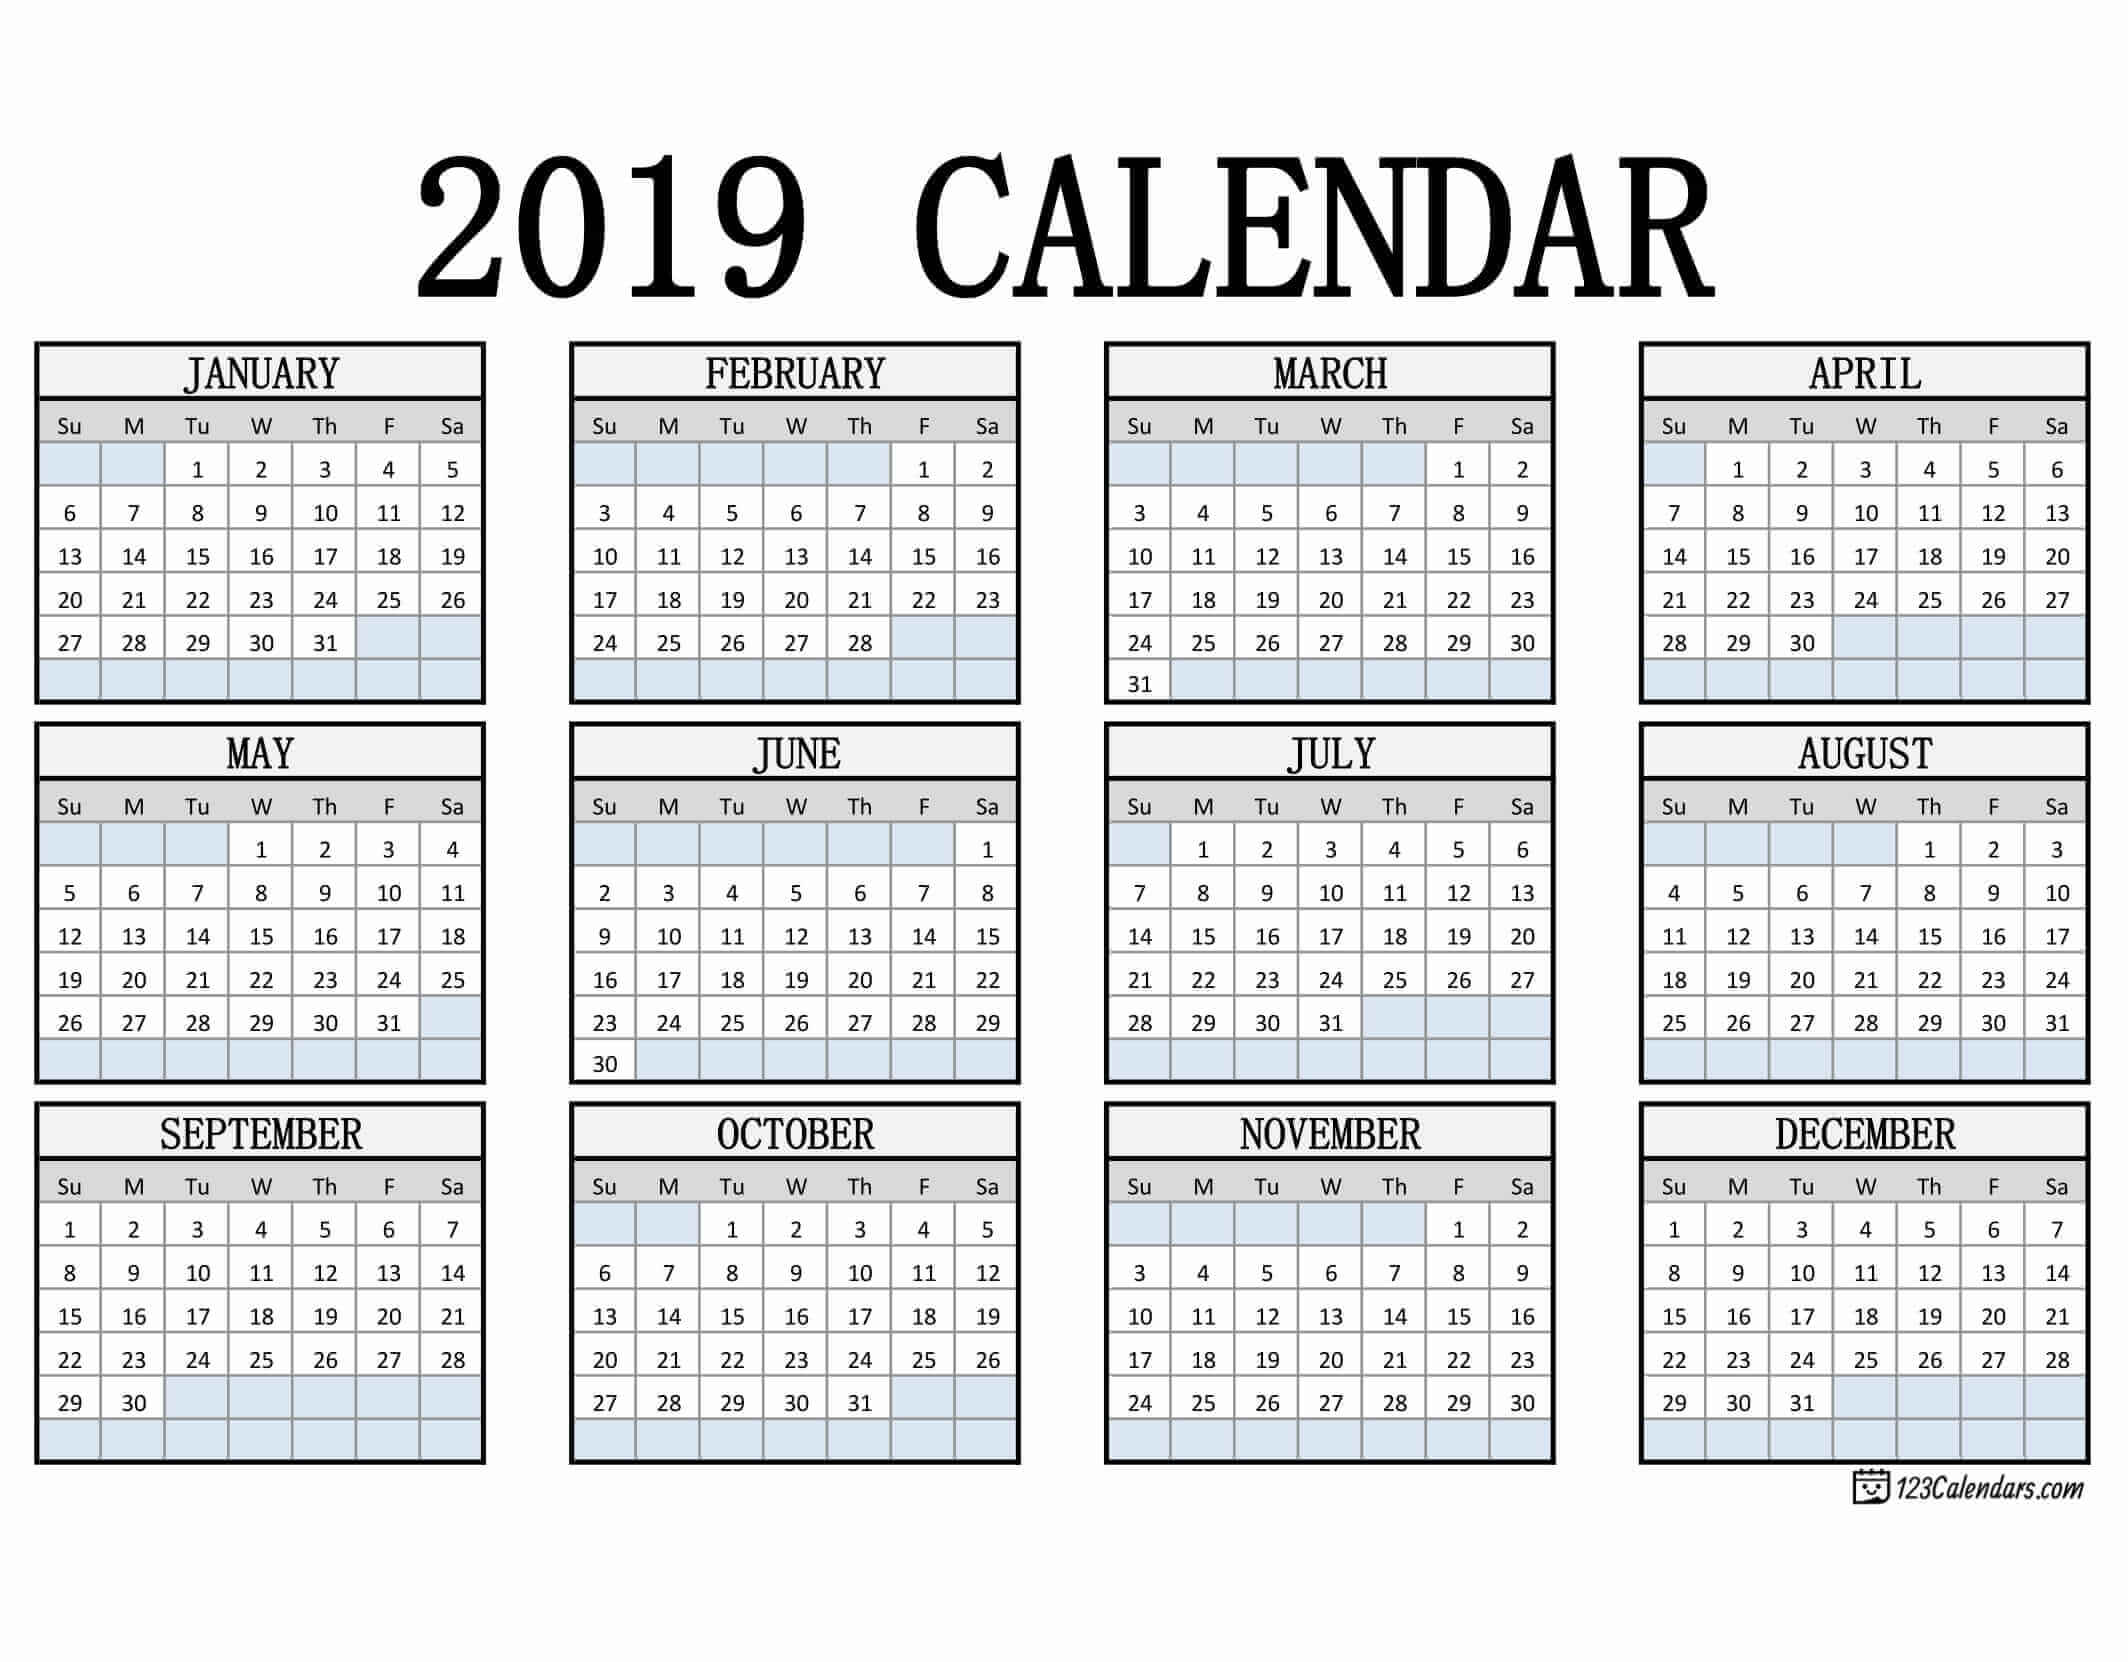 Free Printable 2019 Calendar 123Calendars com